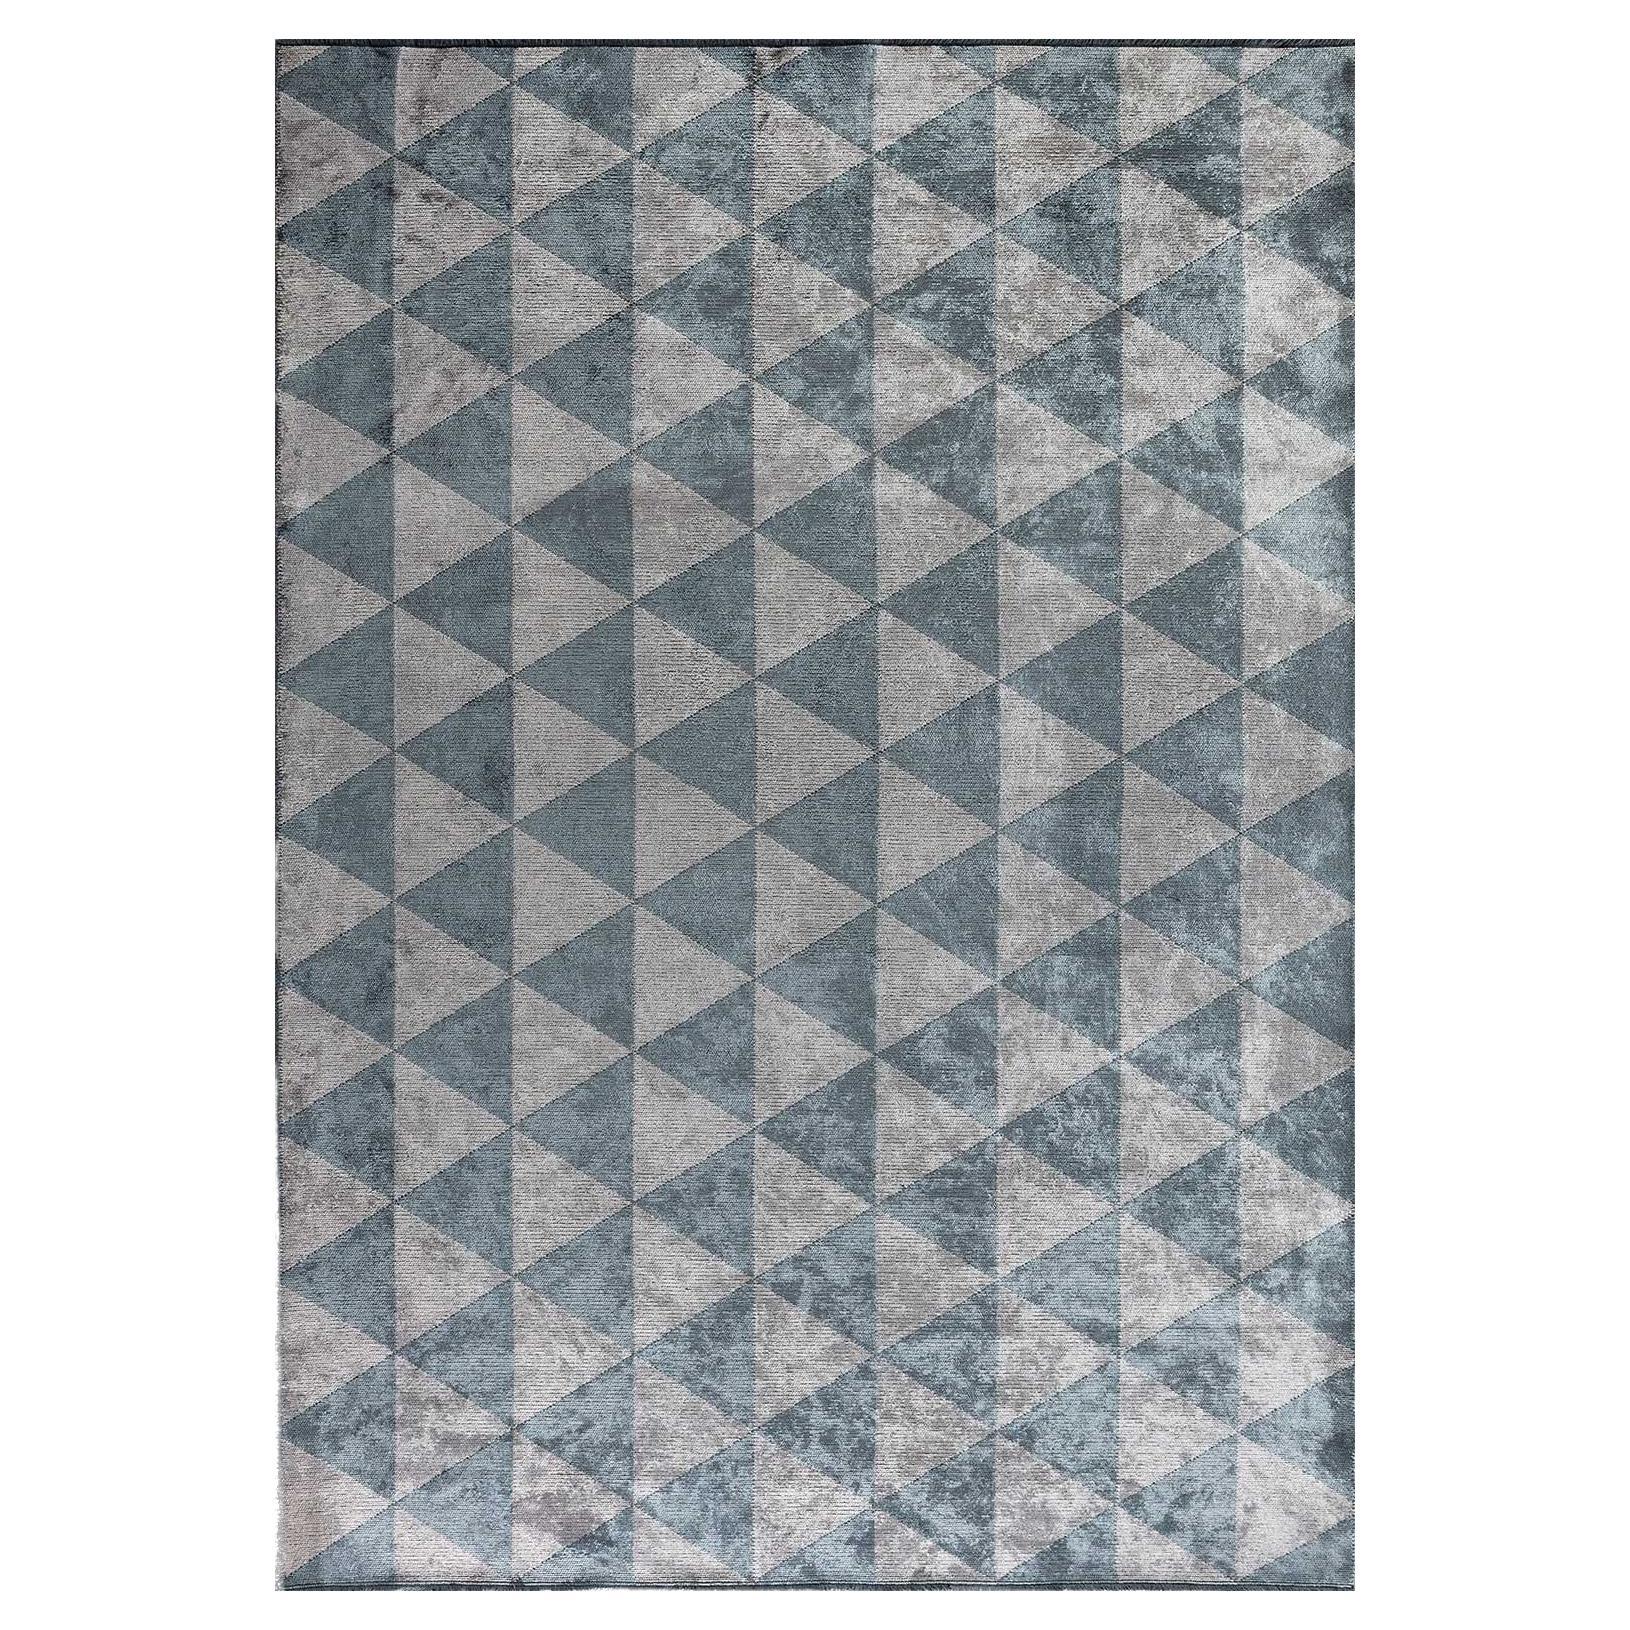 Tapis gris argenté, bleu clair et triangle à motif géométrique en forme de diamant avec brillance en vente